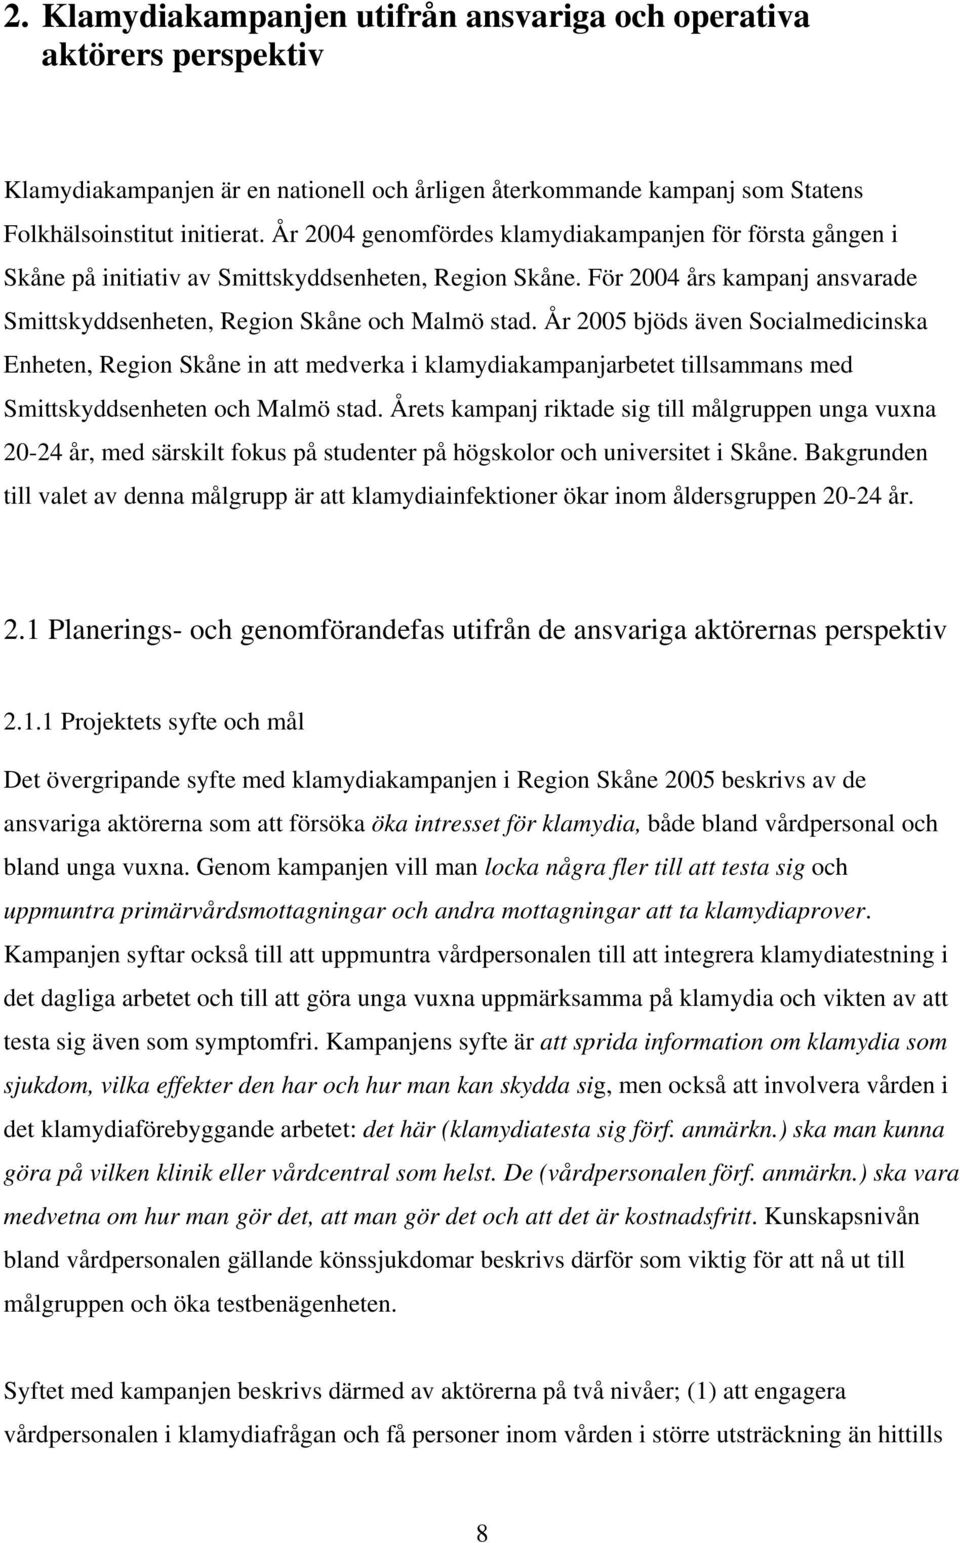 År 2005 bjöds även Socialmedicinska Enheten, Region Skåne in att medverka i klamydiakampanjarbetet tillsammans med Smittskyddsenheten och Malmö stad.